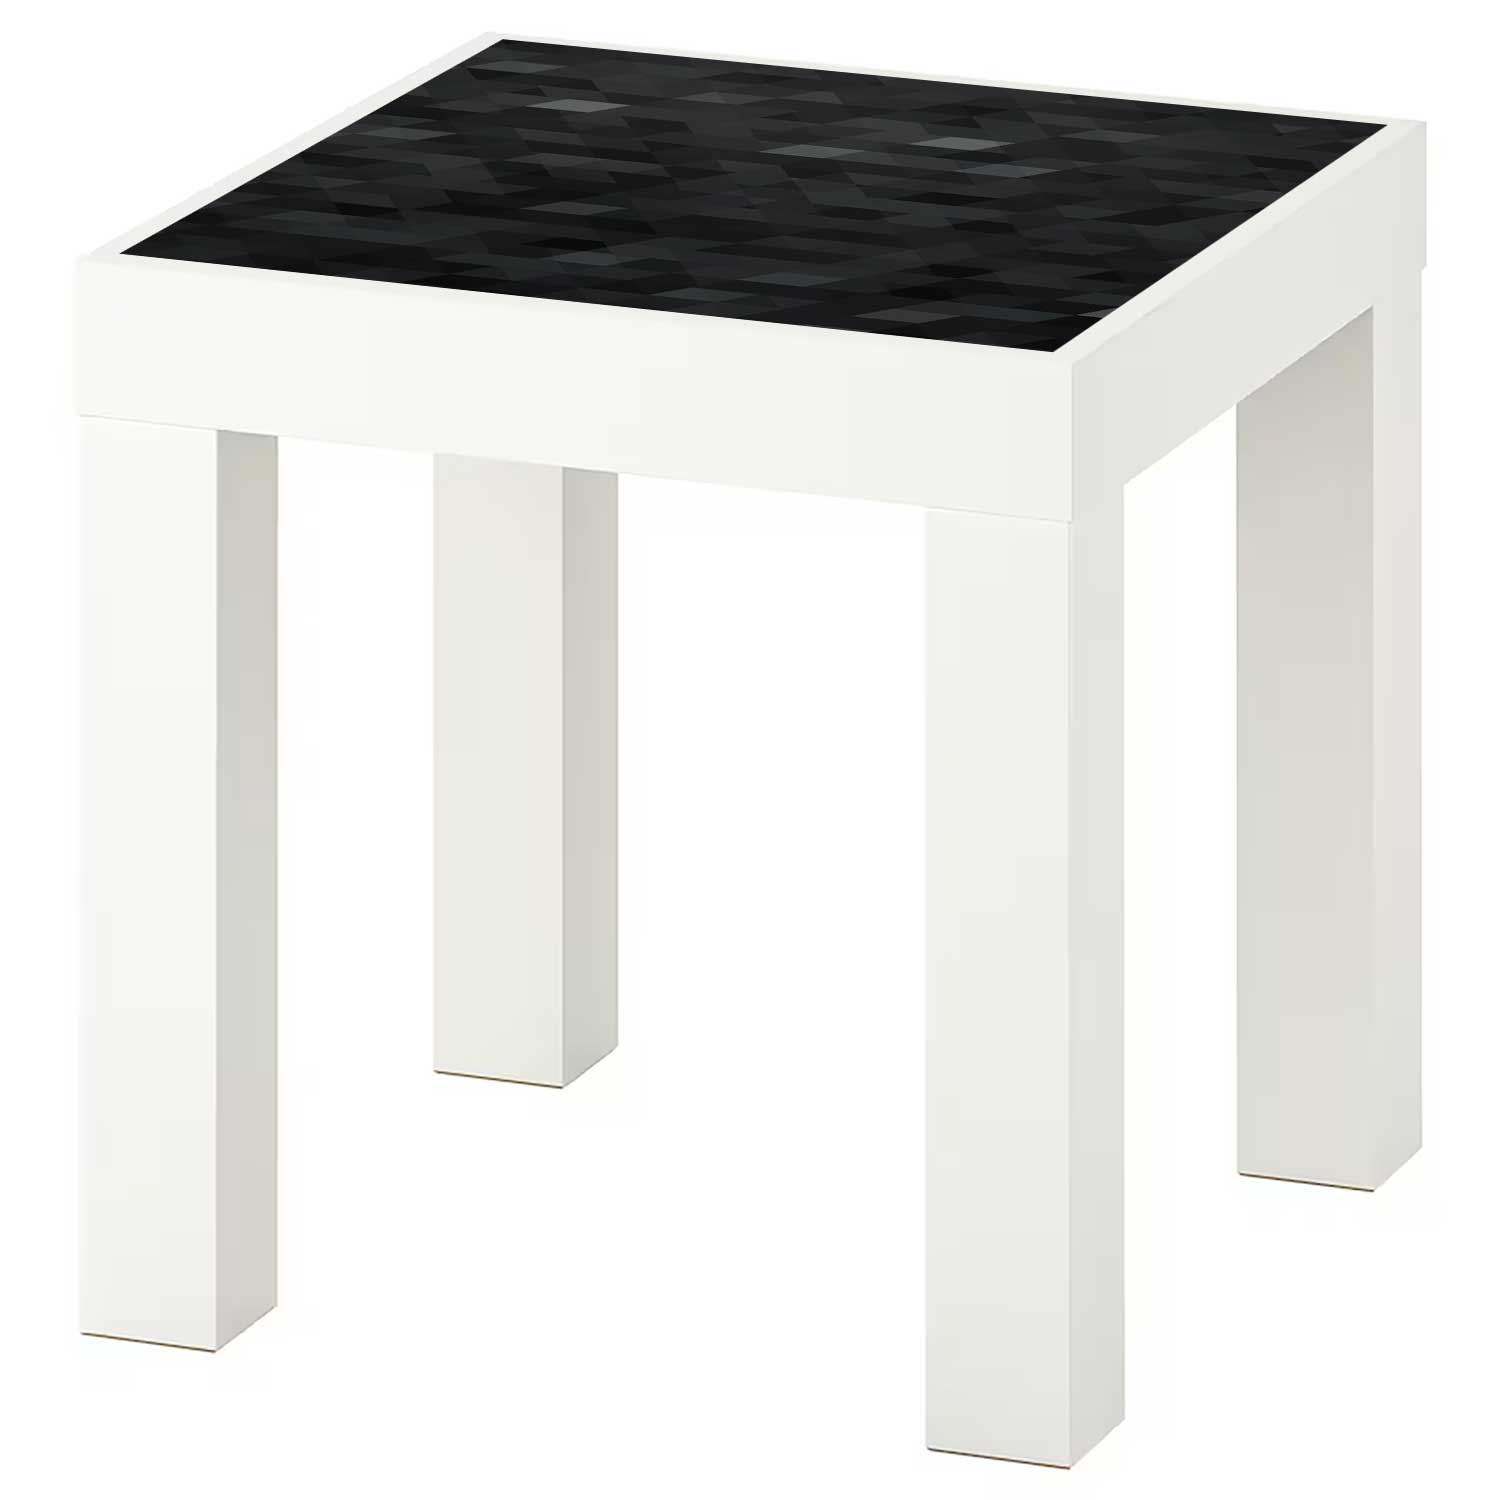 Möbelfolie für IKEA Lack Tisch 35x35 cm 'Modern Pixel'